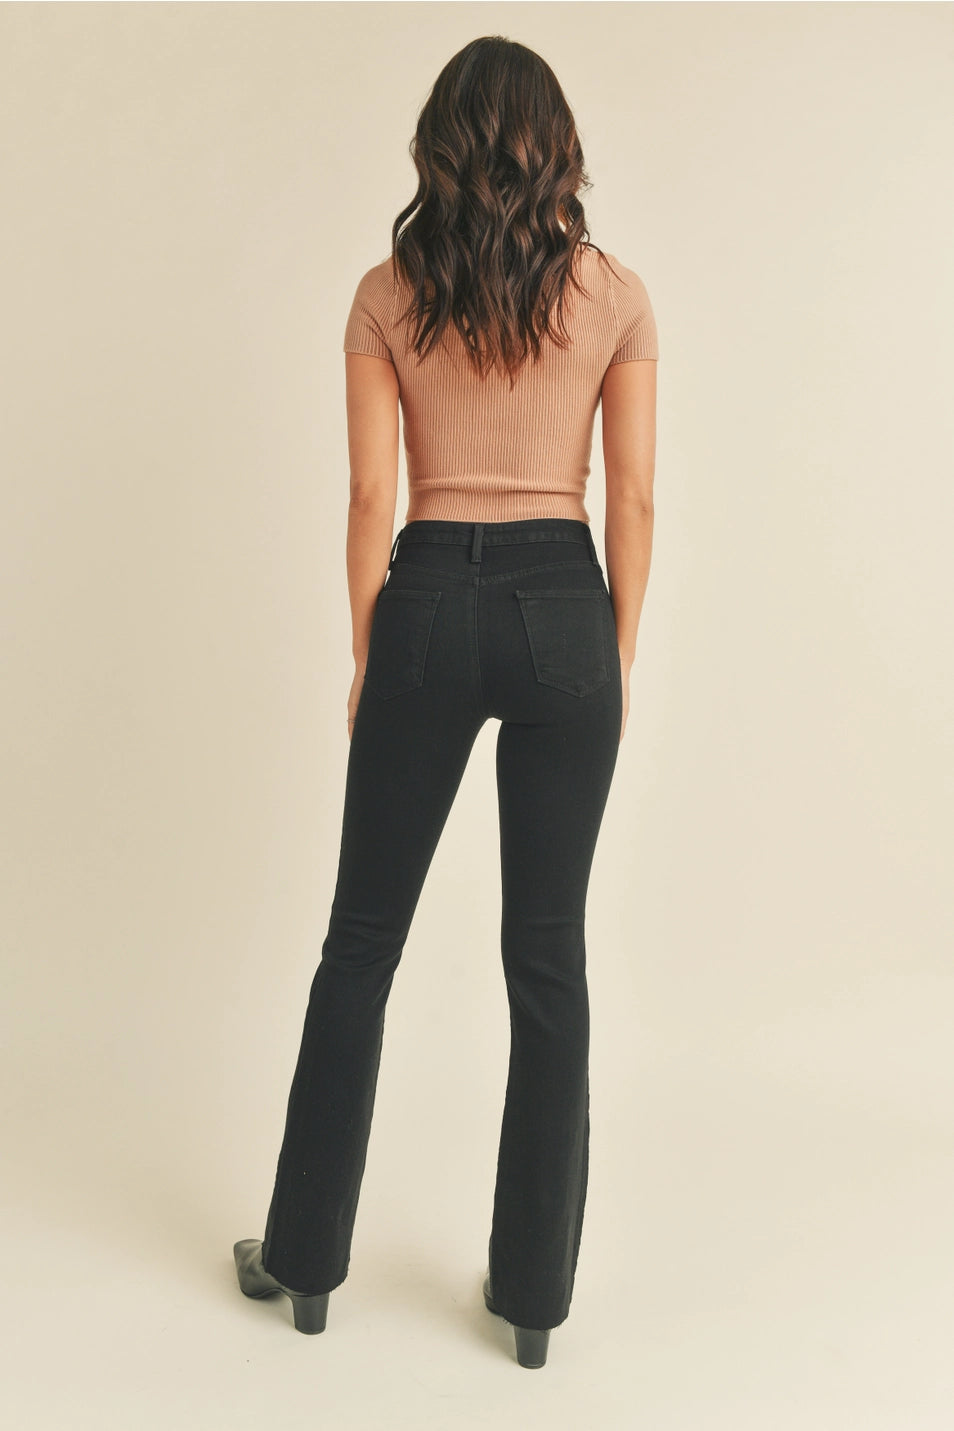 Gillian Flare Jeans in Black